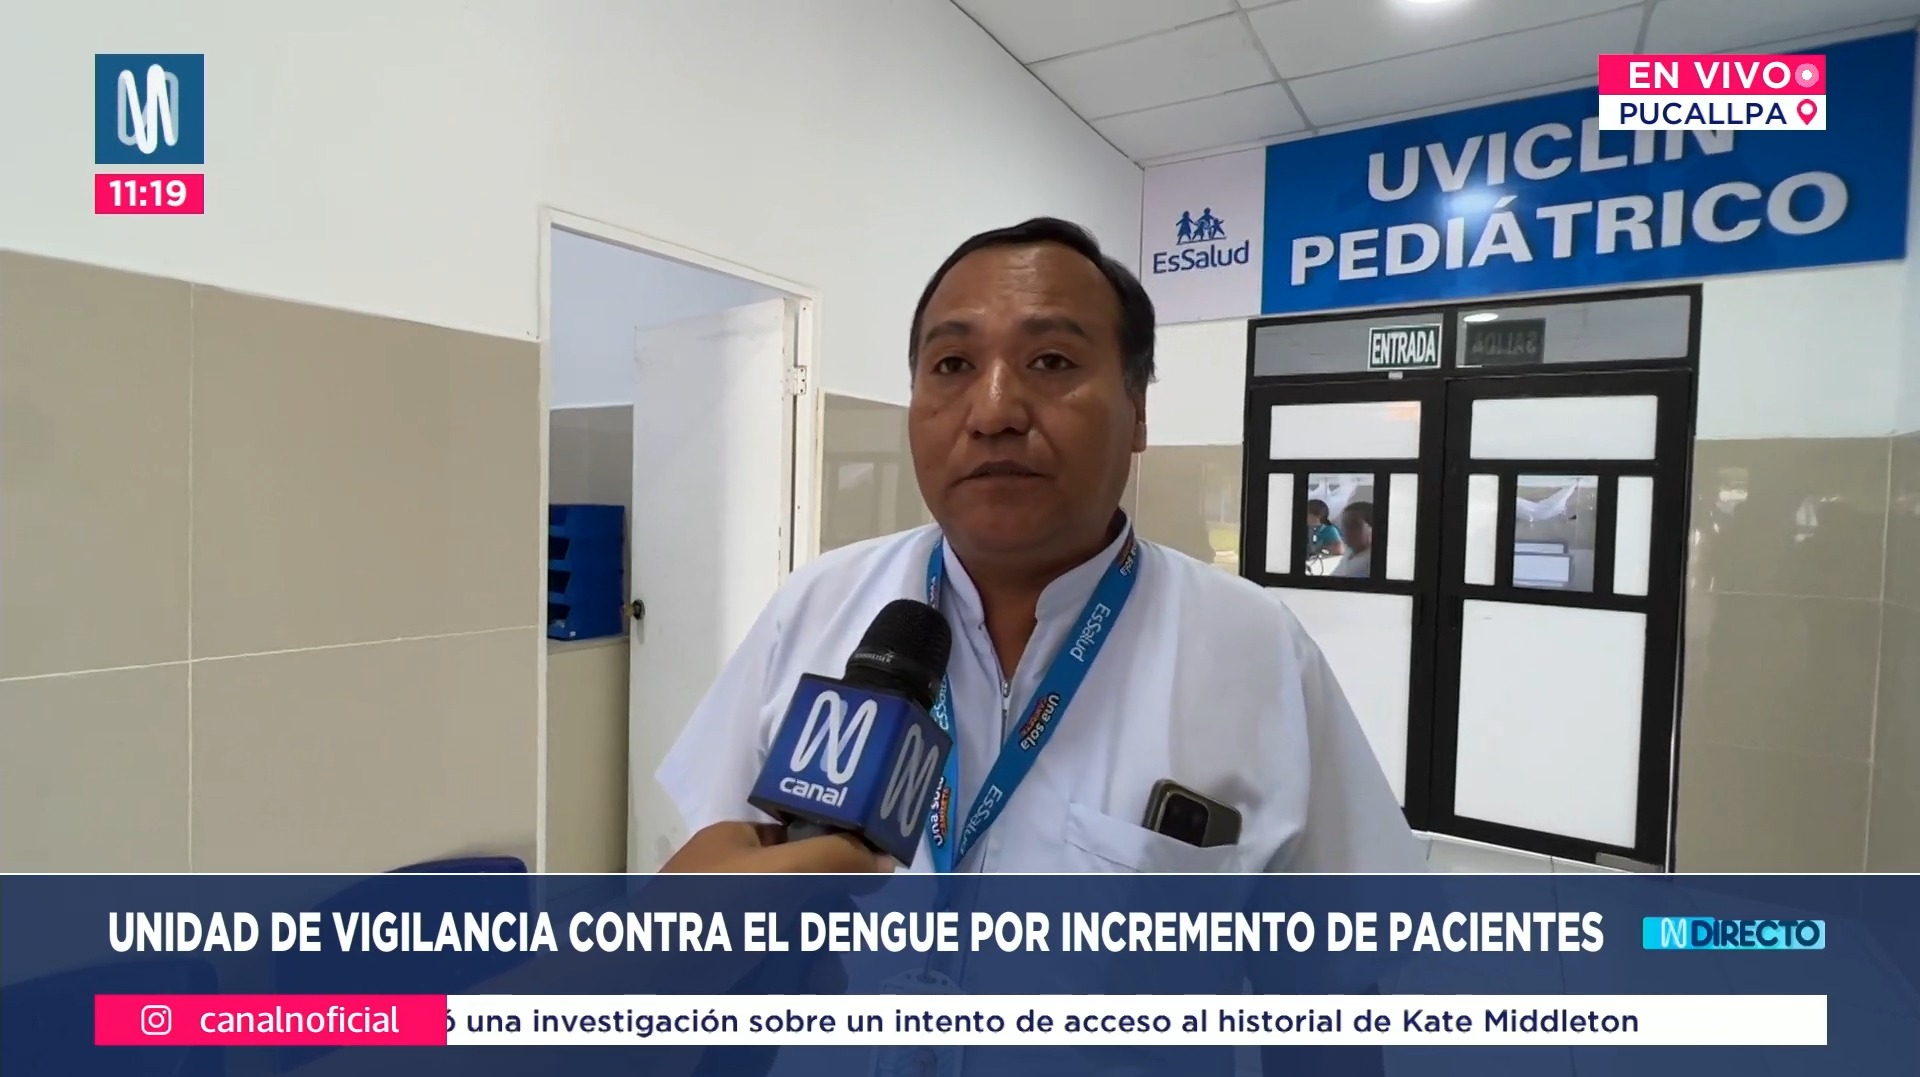 Pucallpa: Unidad de vigilancia contra el dengue por incremento de pacientes